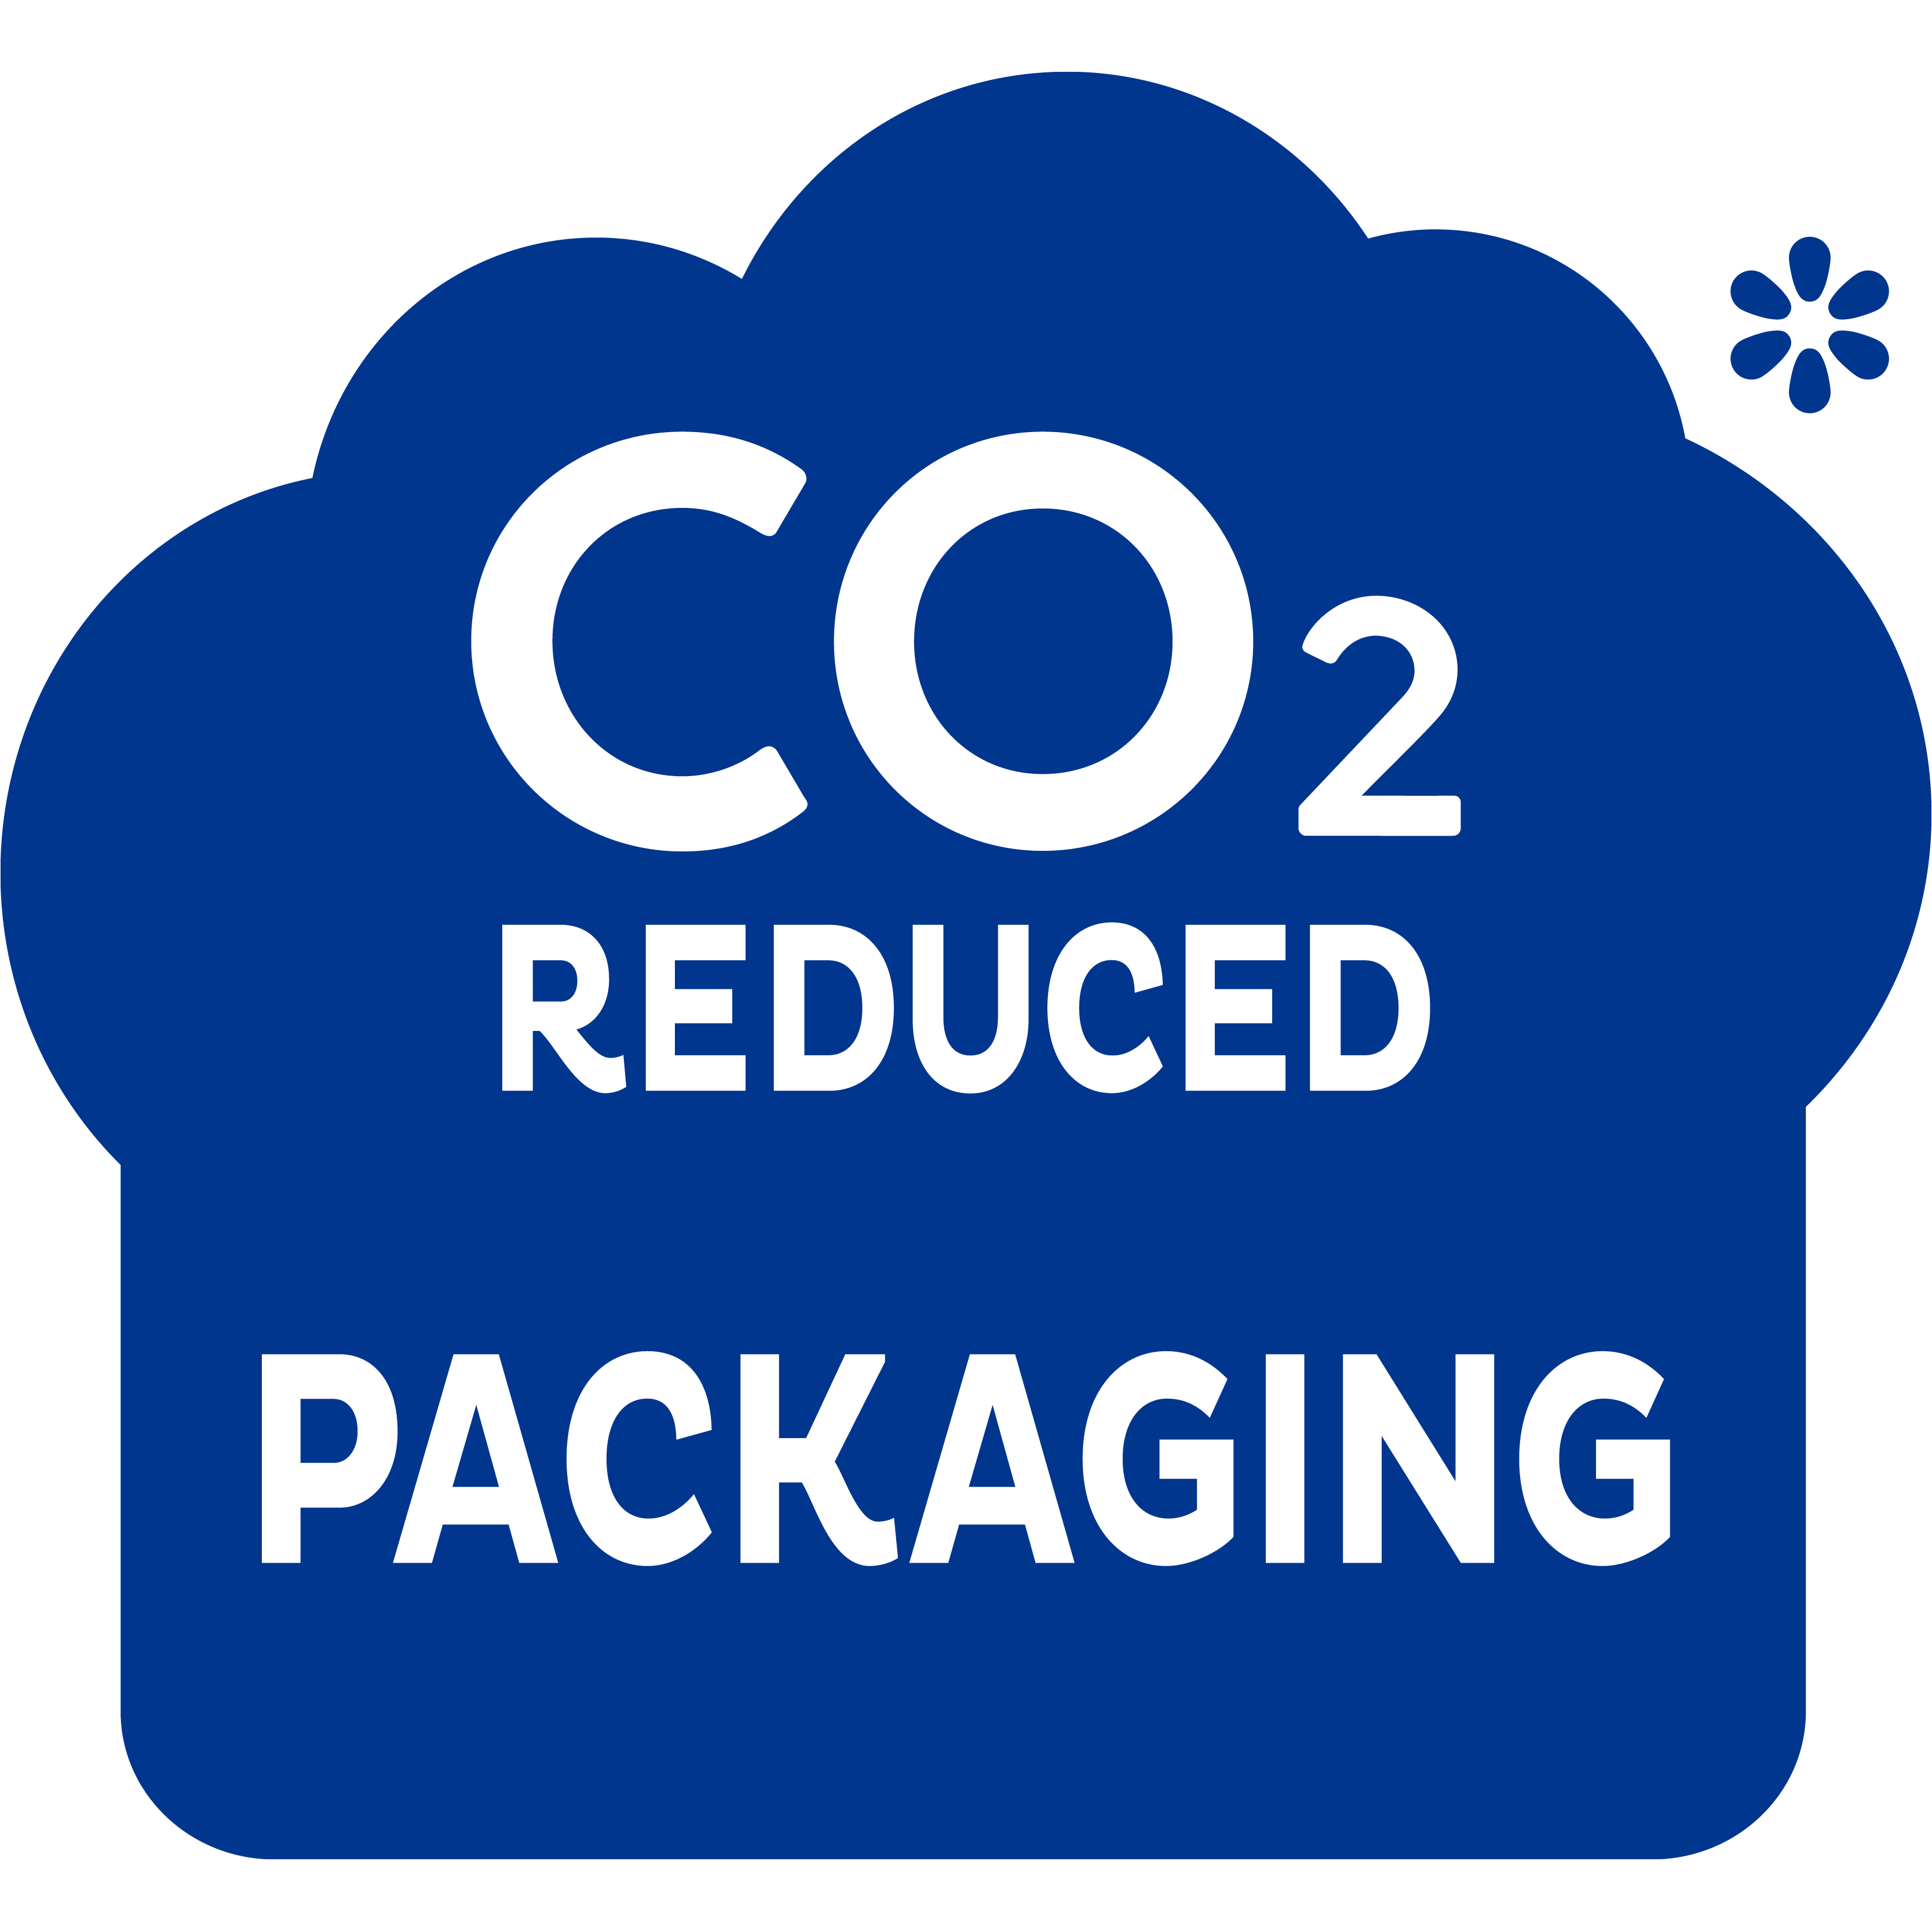 Manjše pakiranje za manj izpustov CO2 - za korak v pravo smer